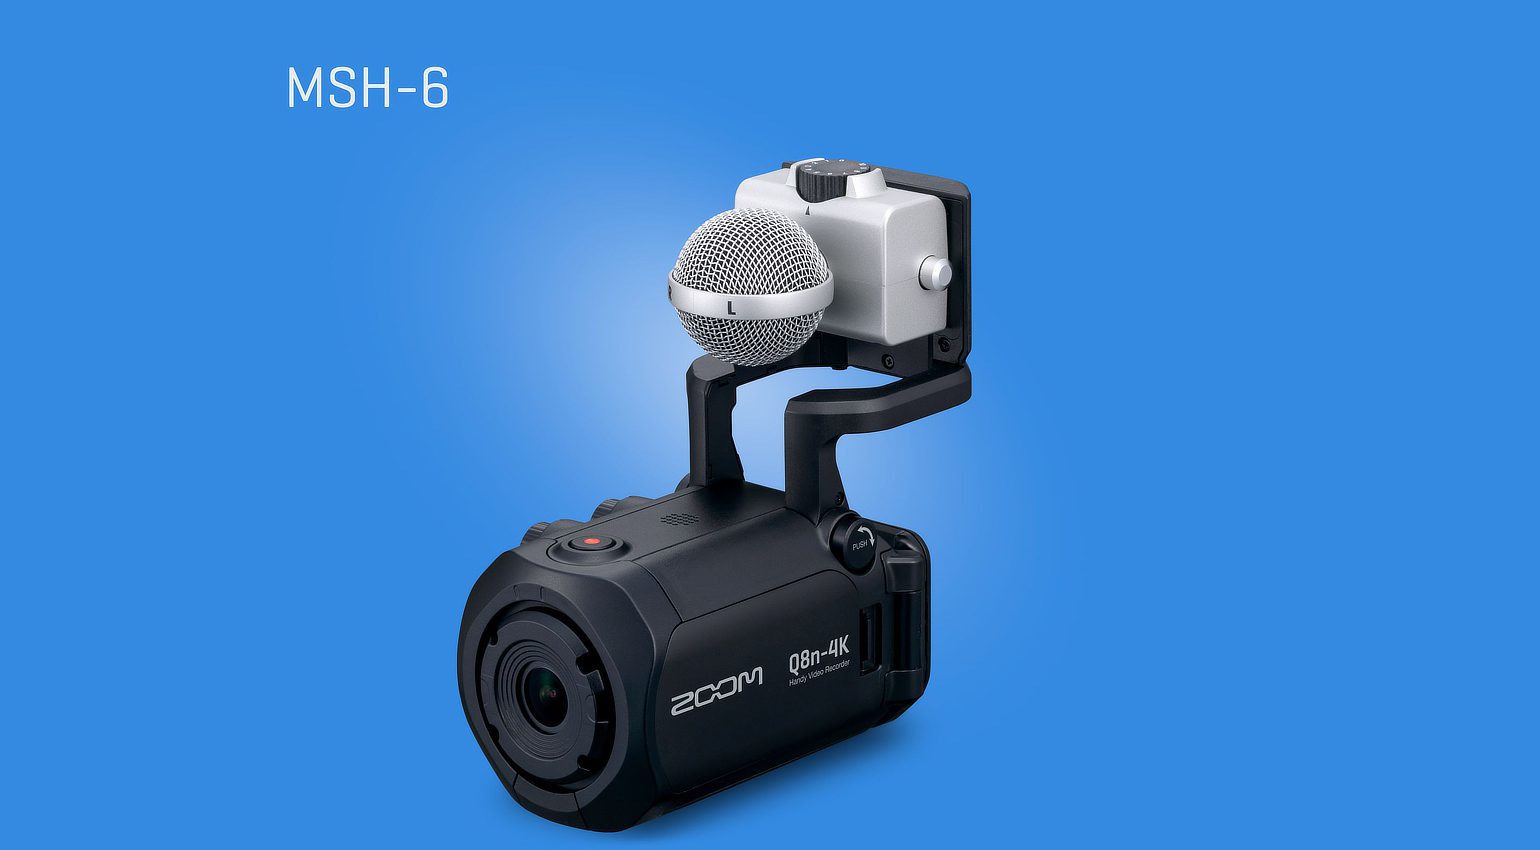 Zoom Q8n-4K - 4K-Video und mehr für Live Streaming